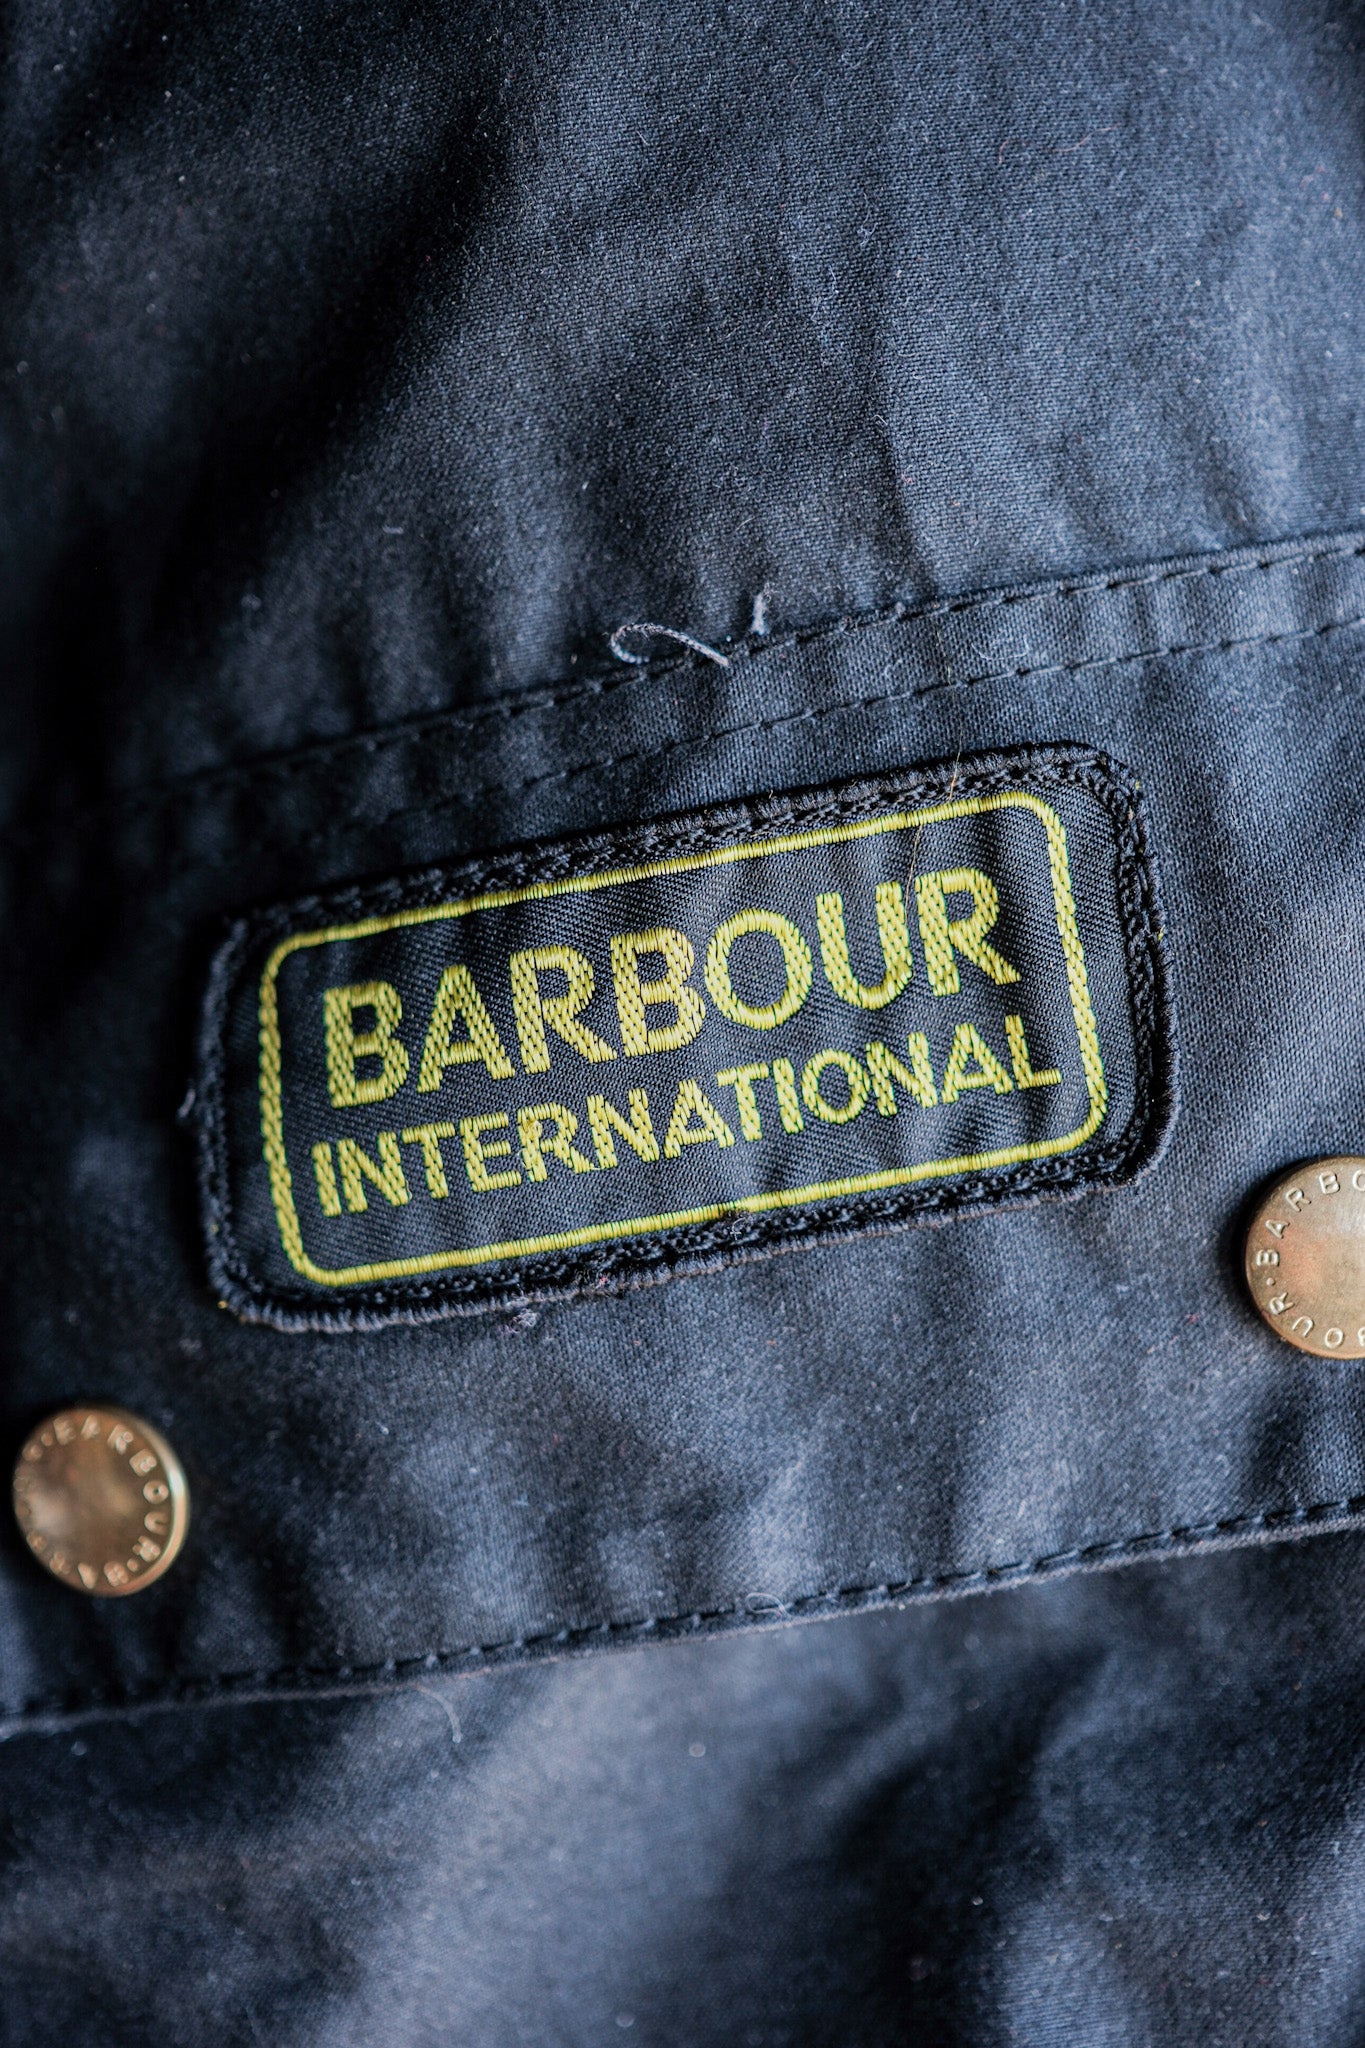 【~90's】Vintage Barbour "INTERNATIONAL SUIT" 3 Crest Size.44